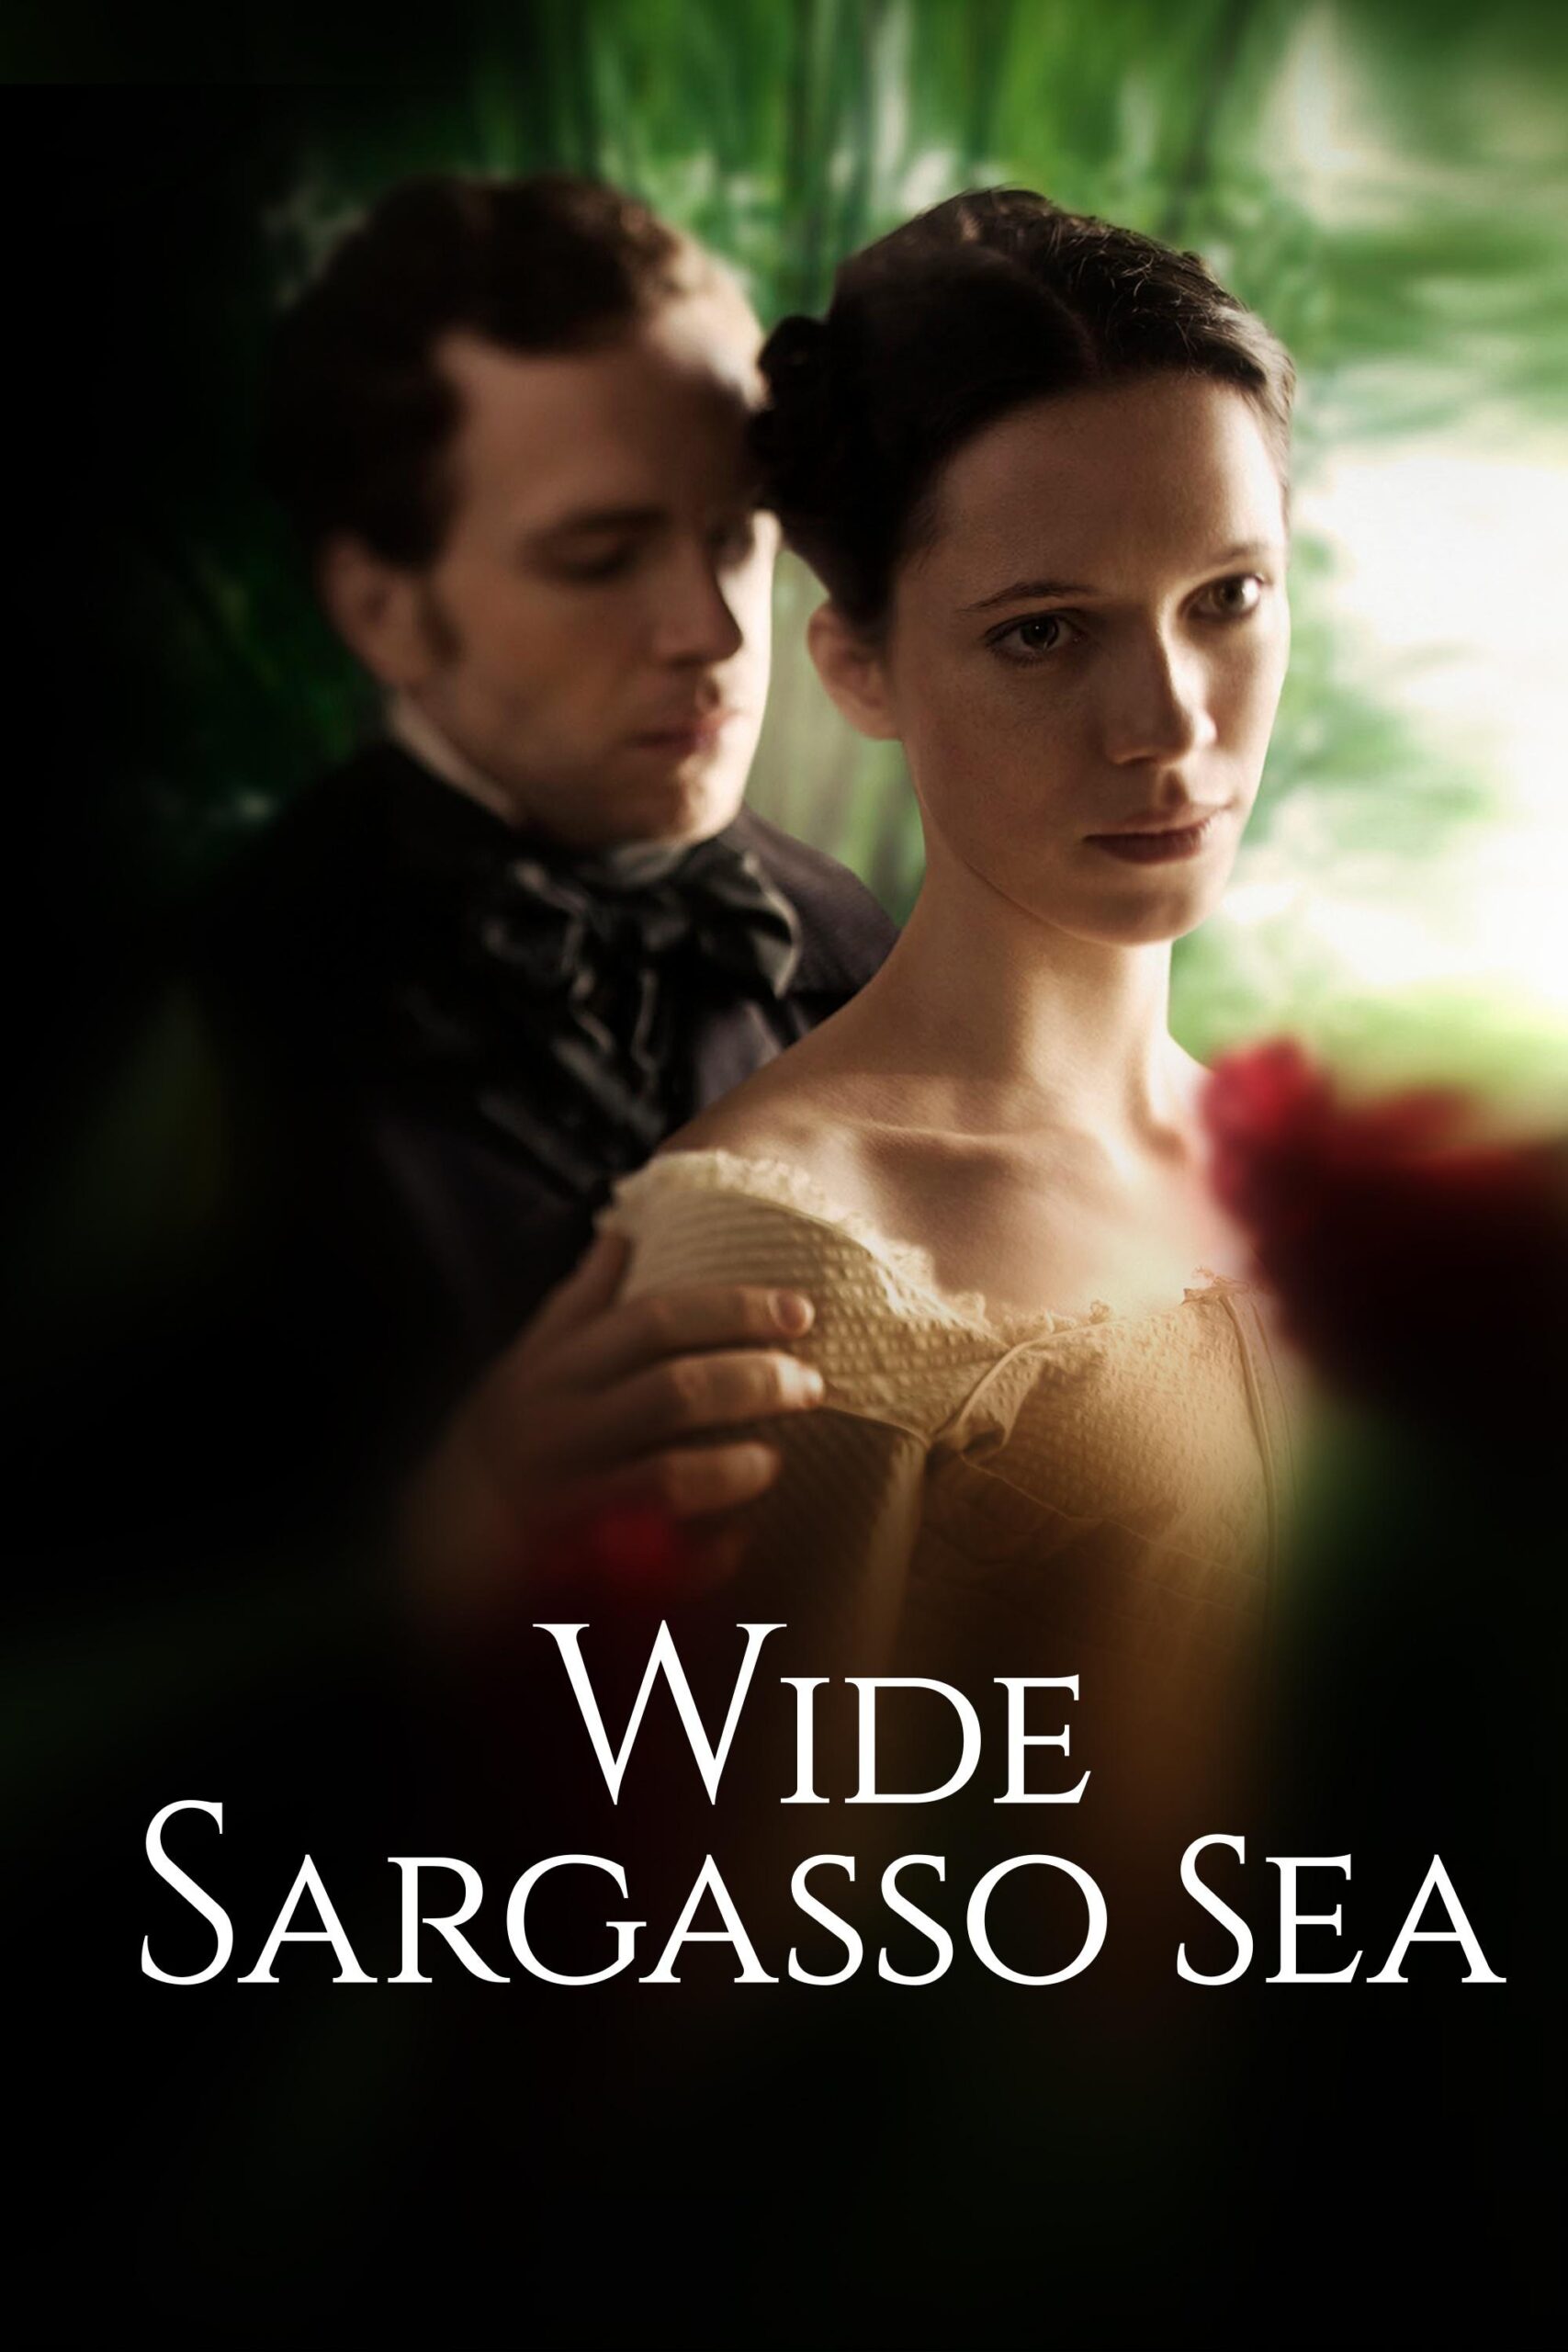 Wide Sargasso sea